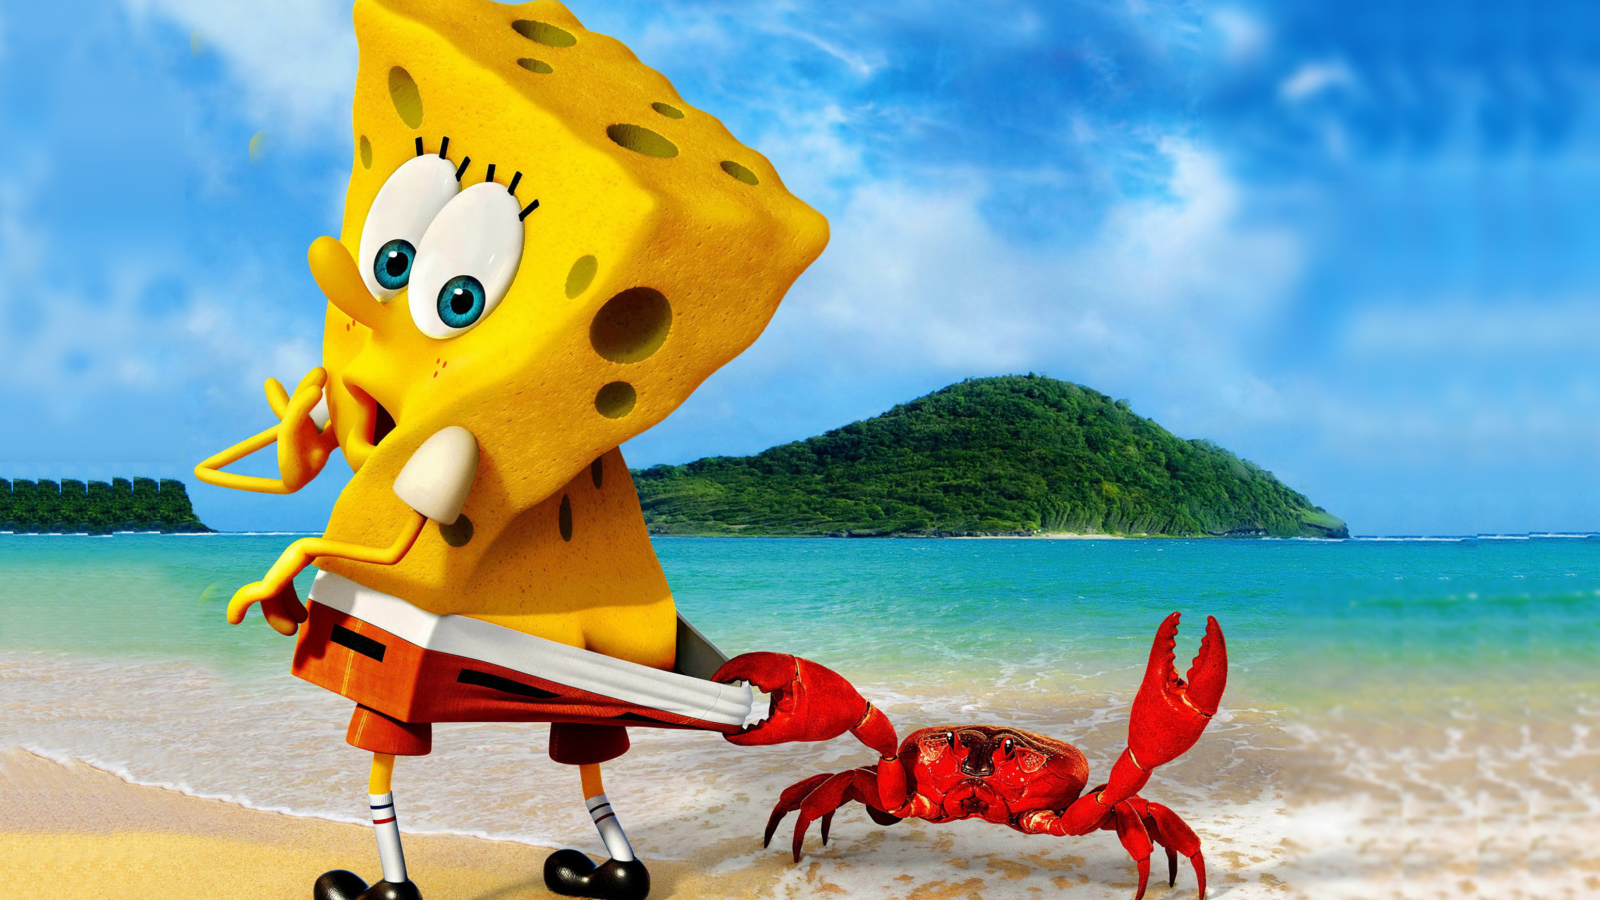 Spongebob And Crab wallpaper 1600x900